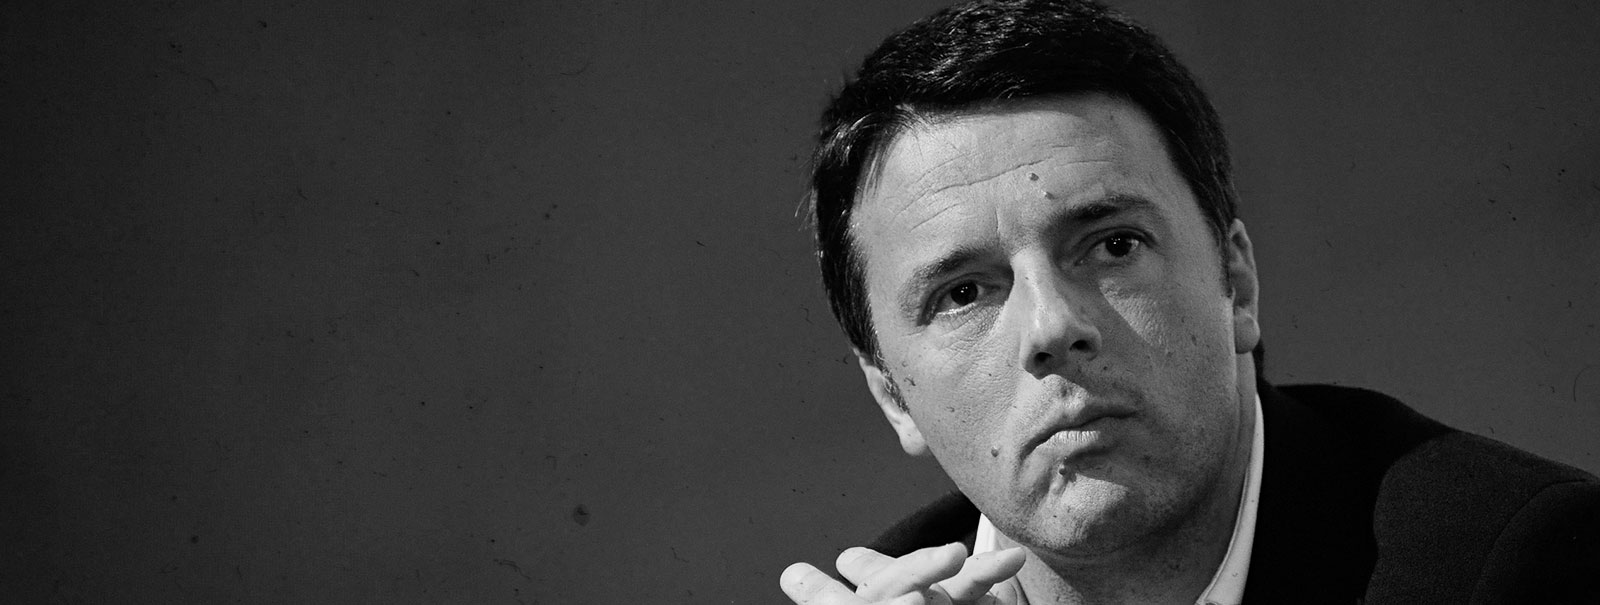 Cosa ha in mente, davvero, Matteo Renzi?